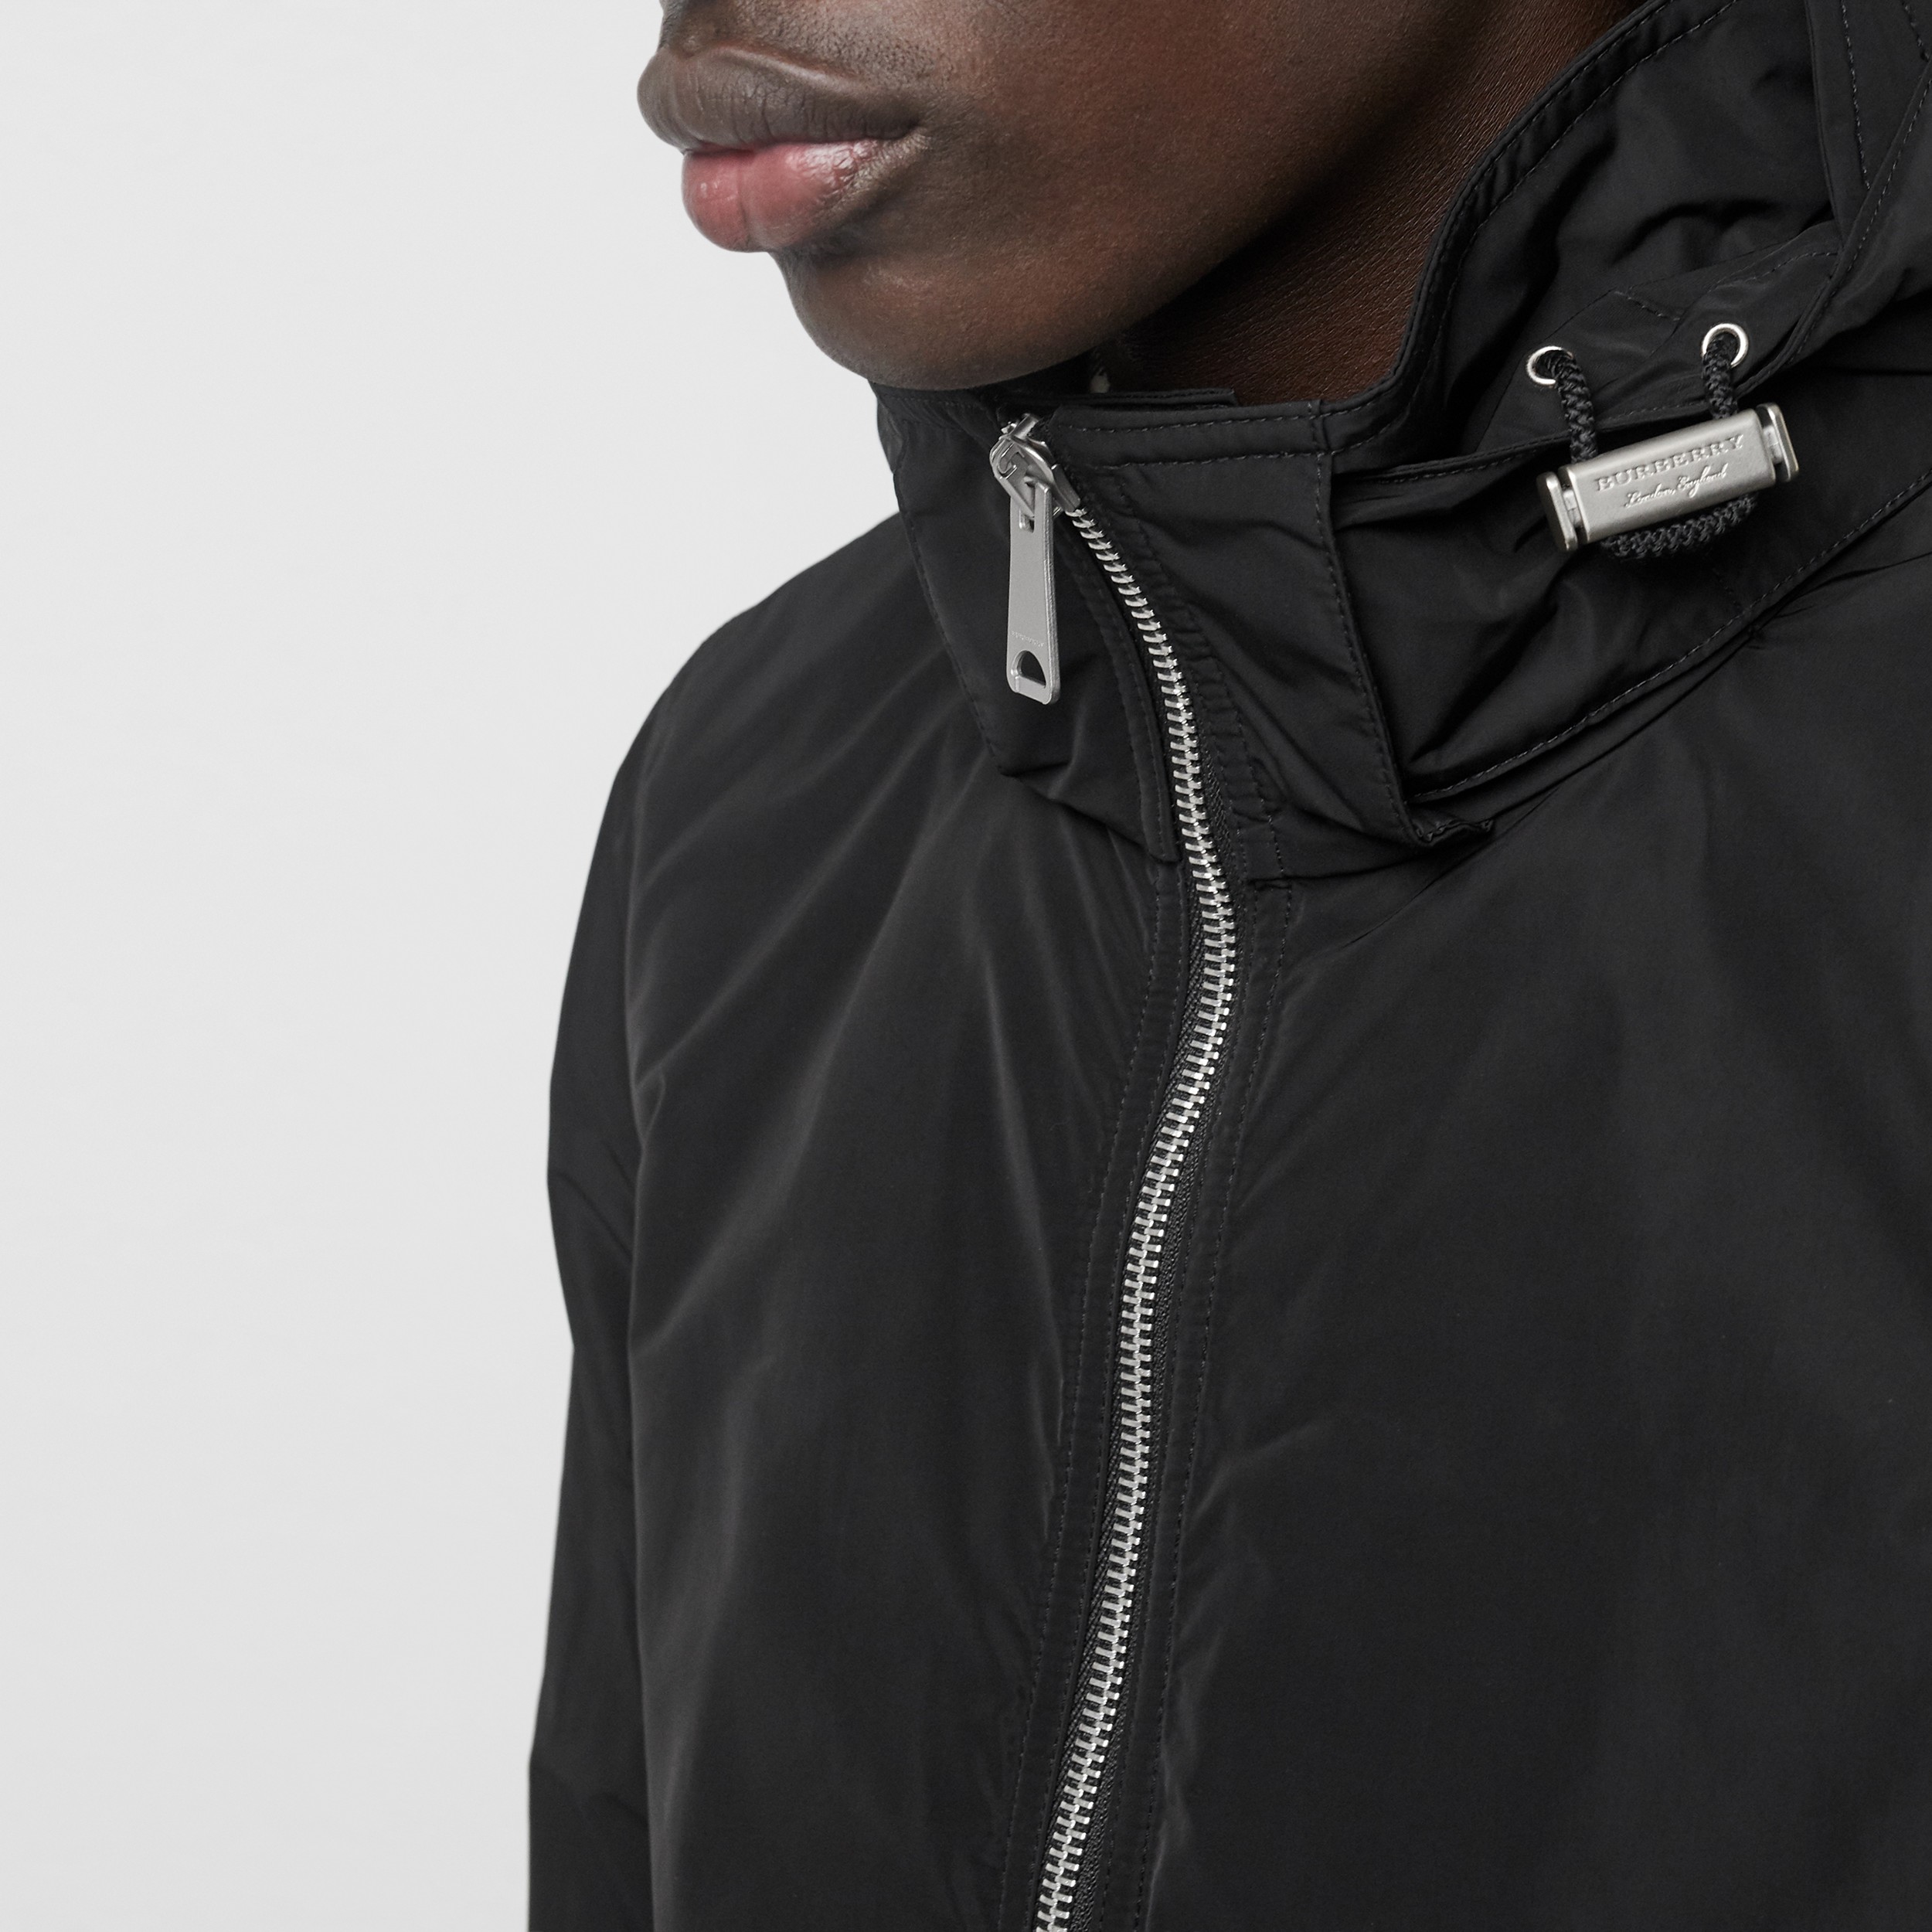 Packaway Hood Showerproof Jacket in Black - Men | Burberry United States